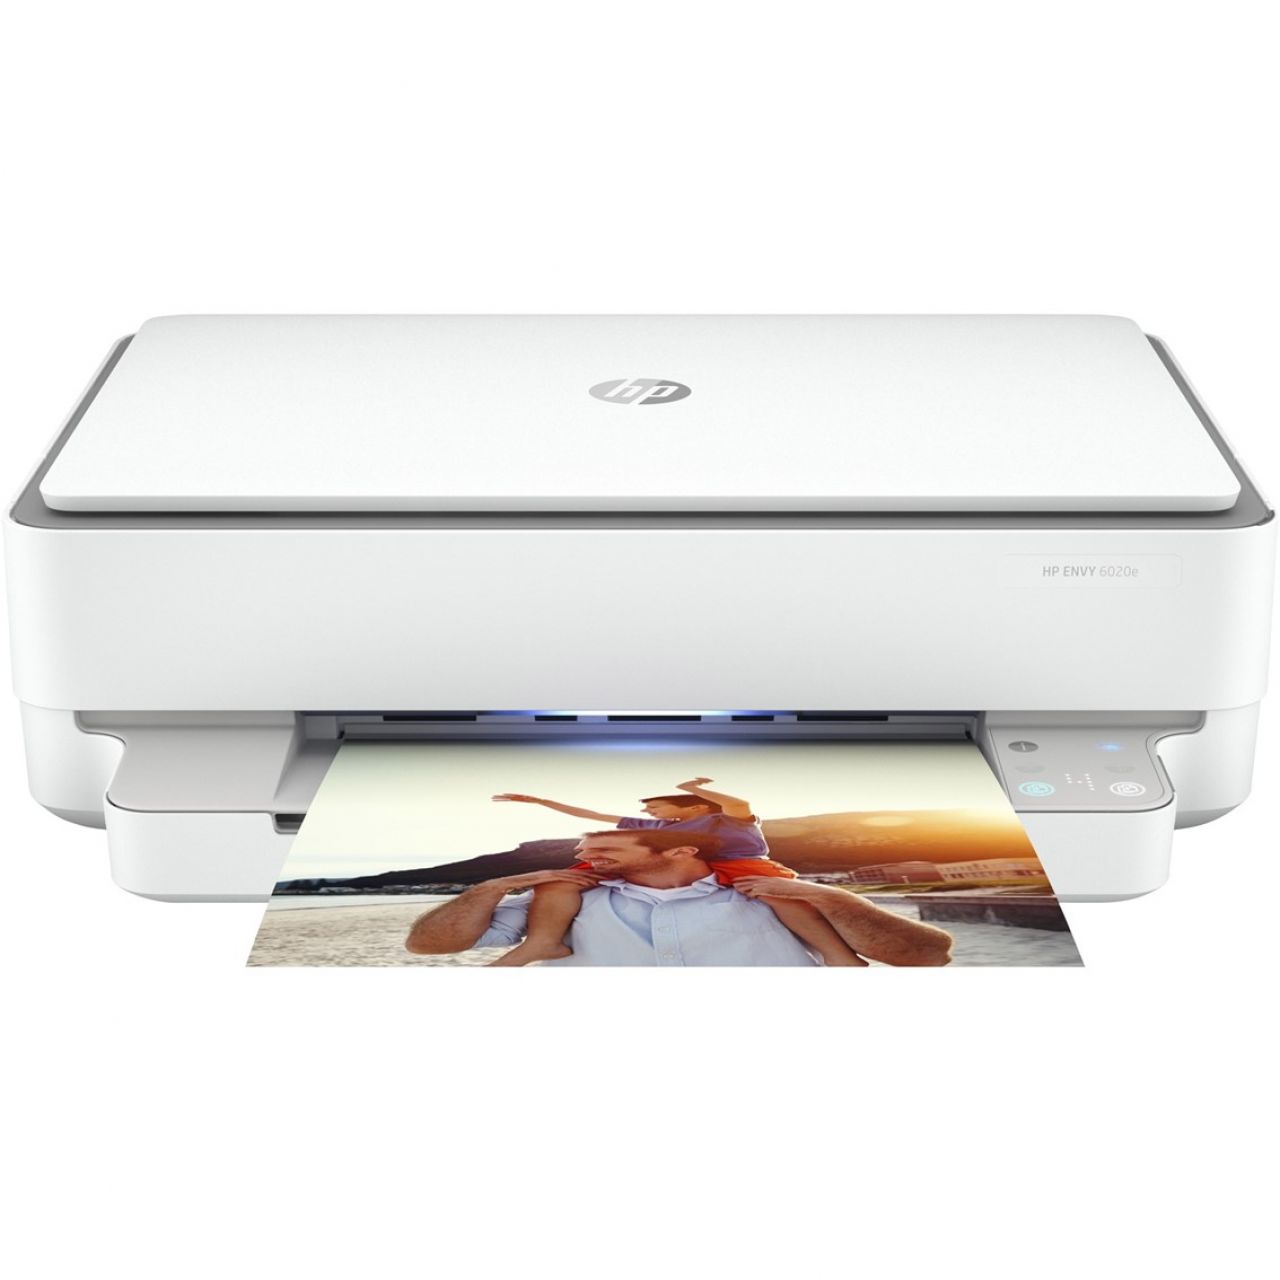 Destacada Impresora multifunción HP Color Envy 6020E A4 - 10ppm